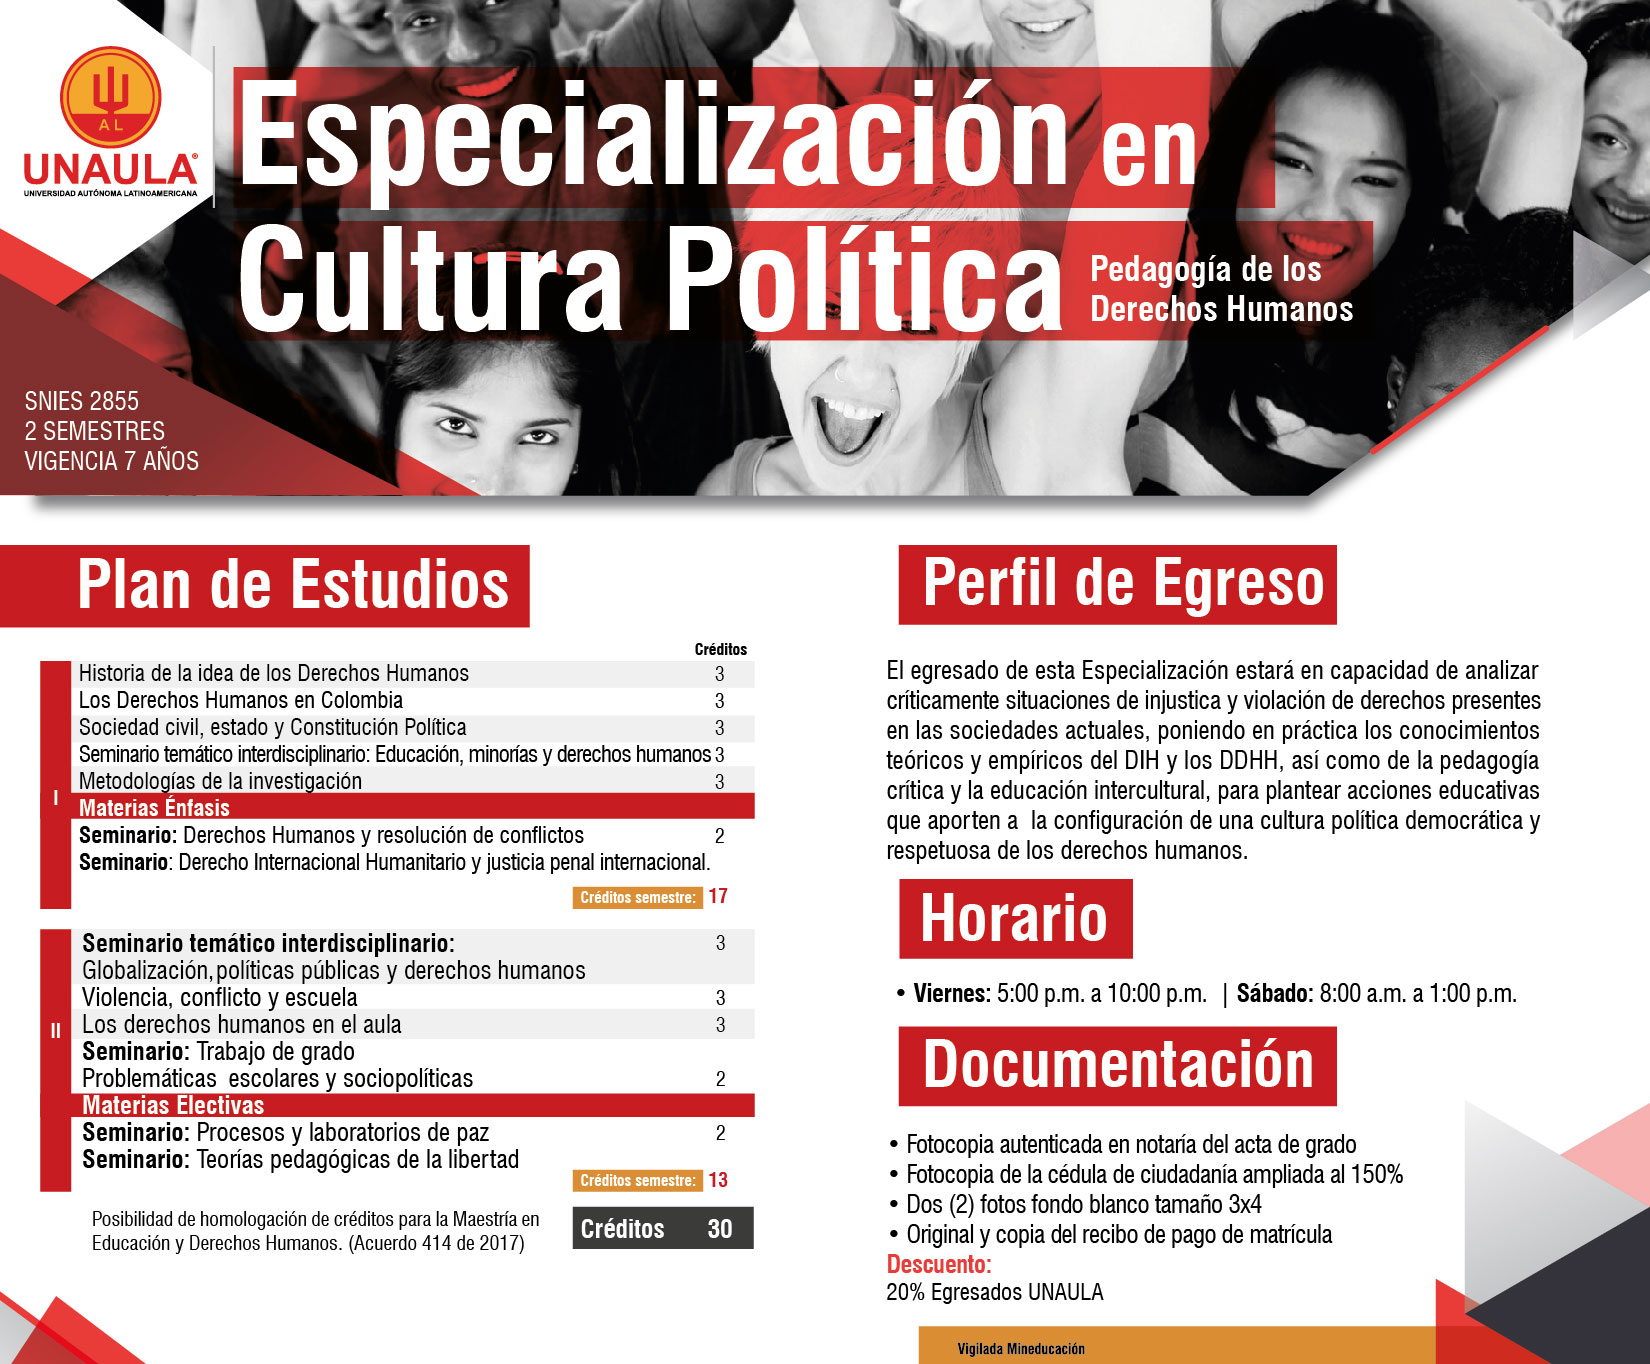 Especialización Cultura Política: Pedagogía de los Derechos Humanos